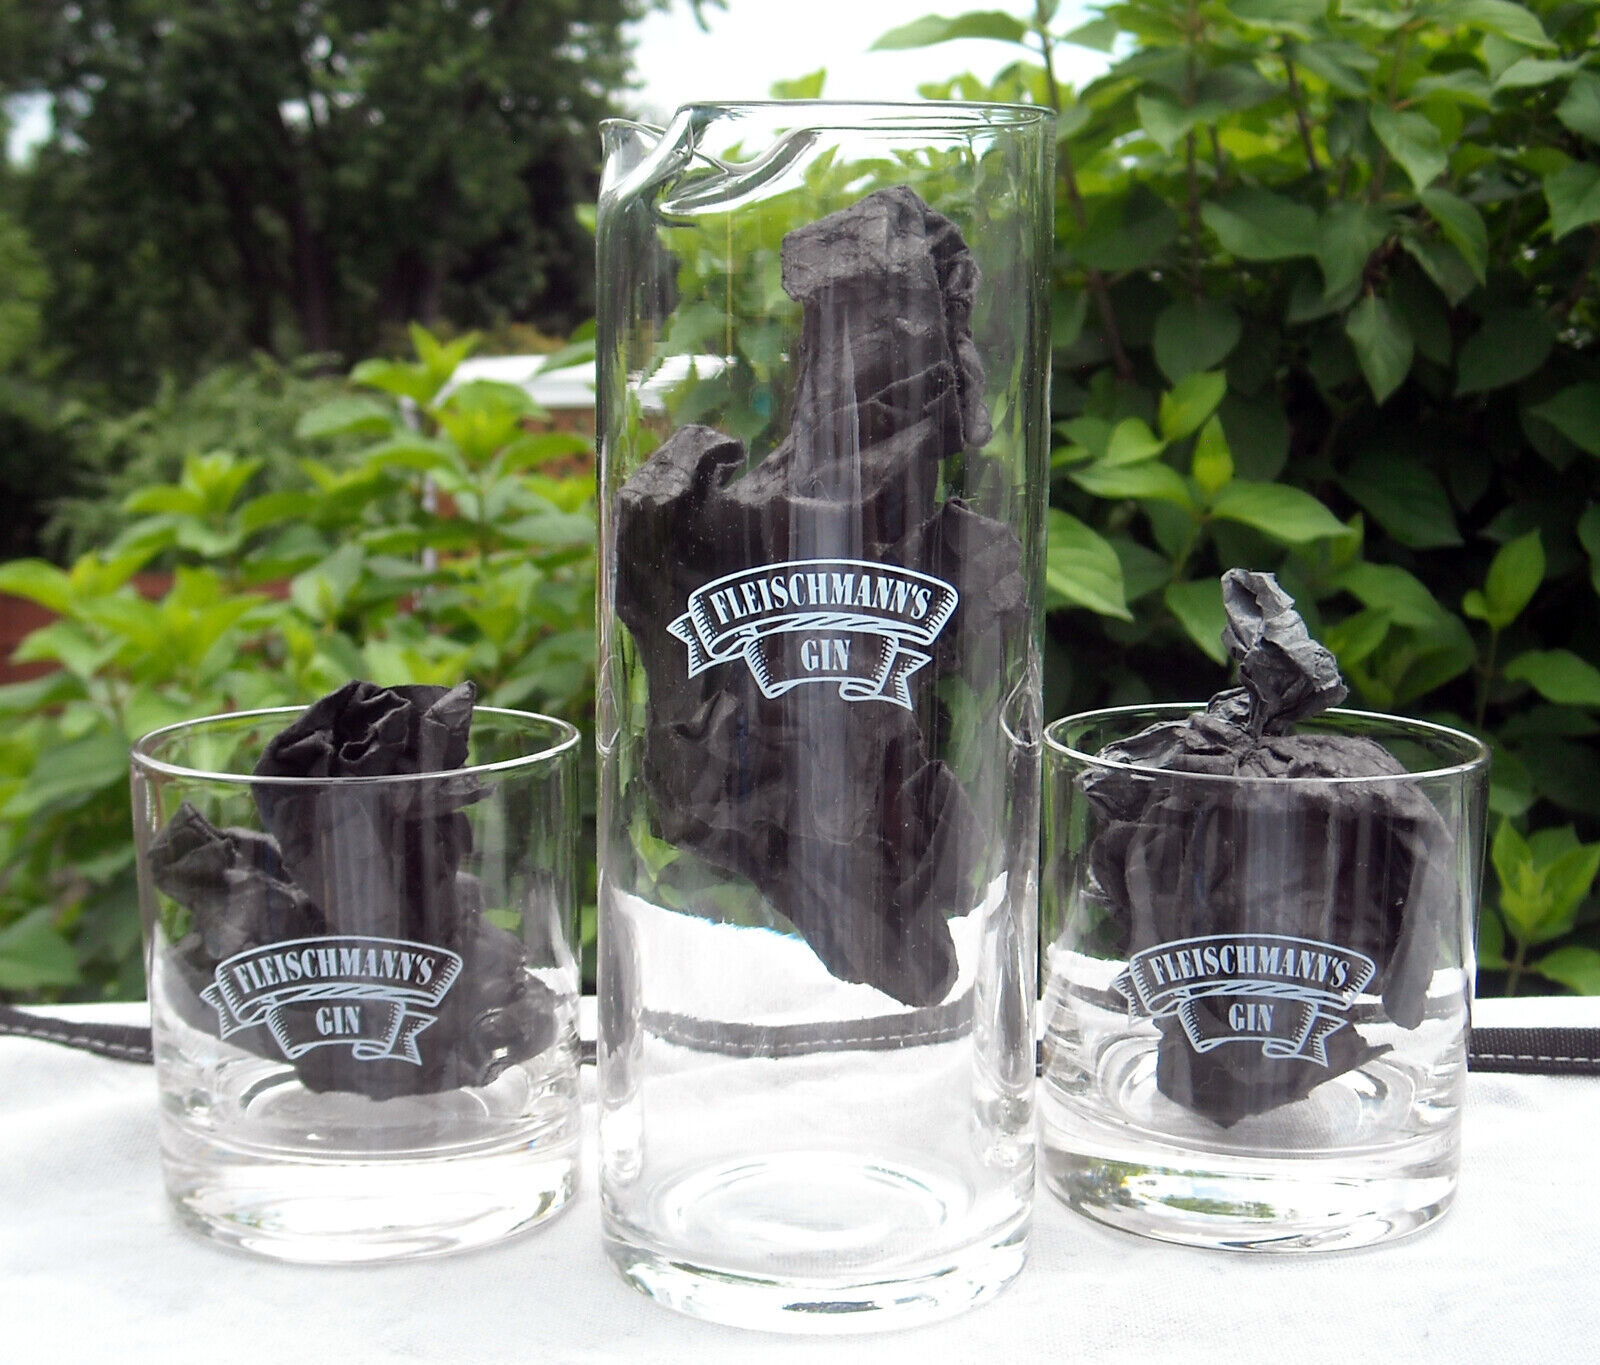 Fleischmanns Gin set 2 rocks glass & tall glass pitcher with s...